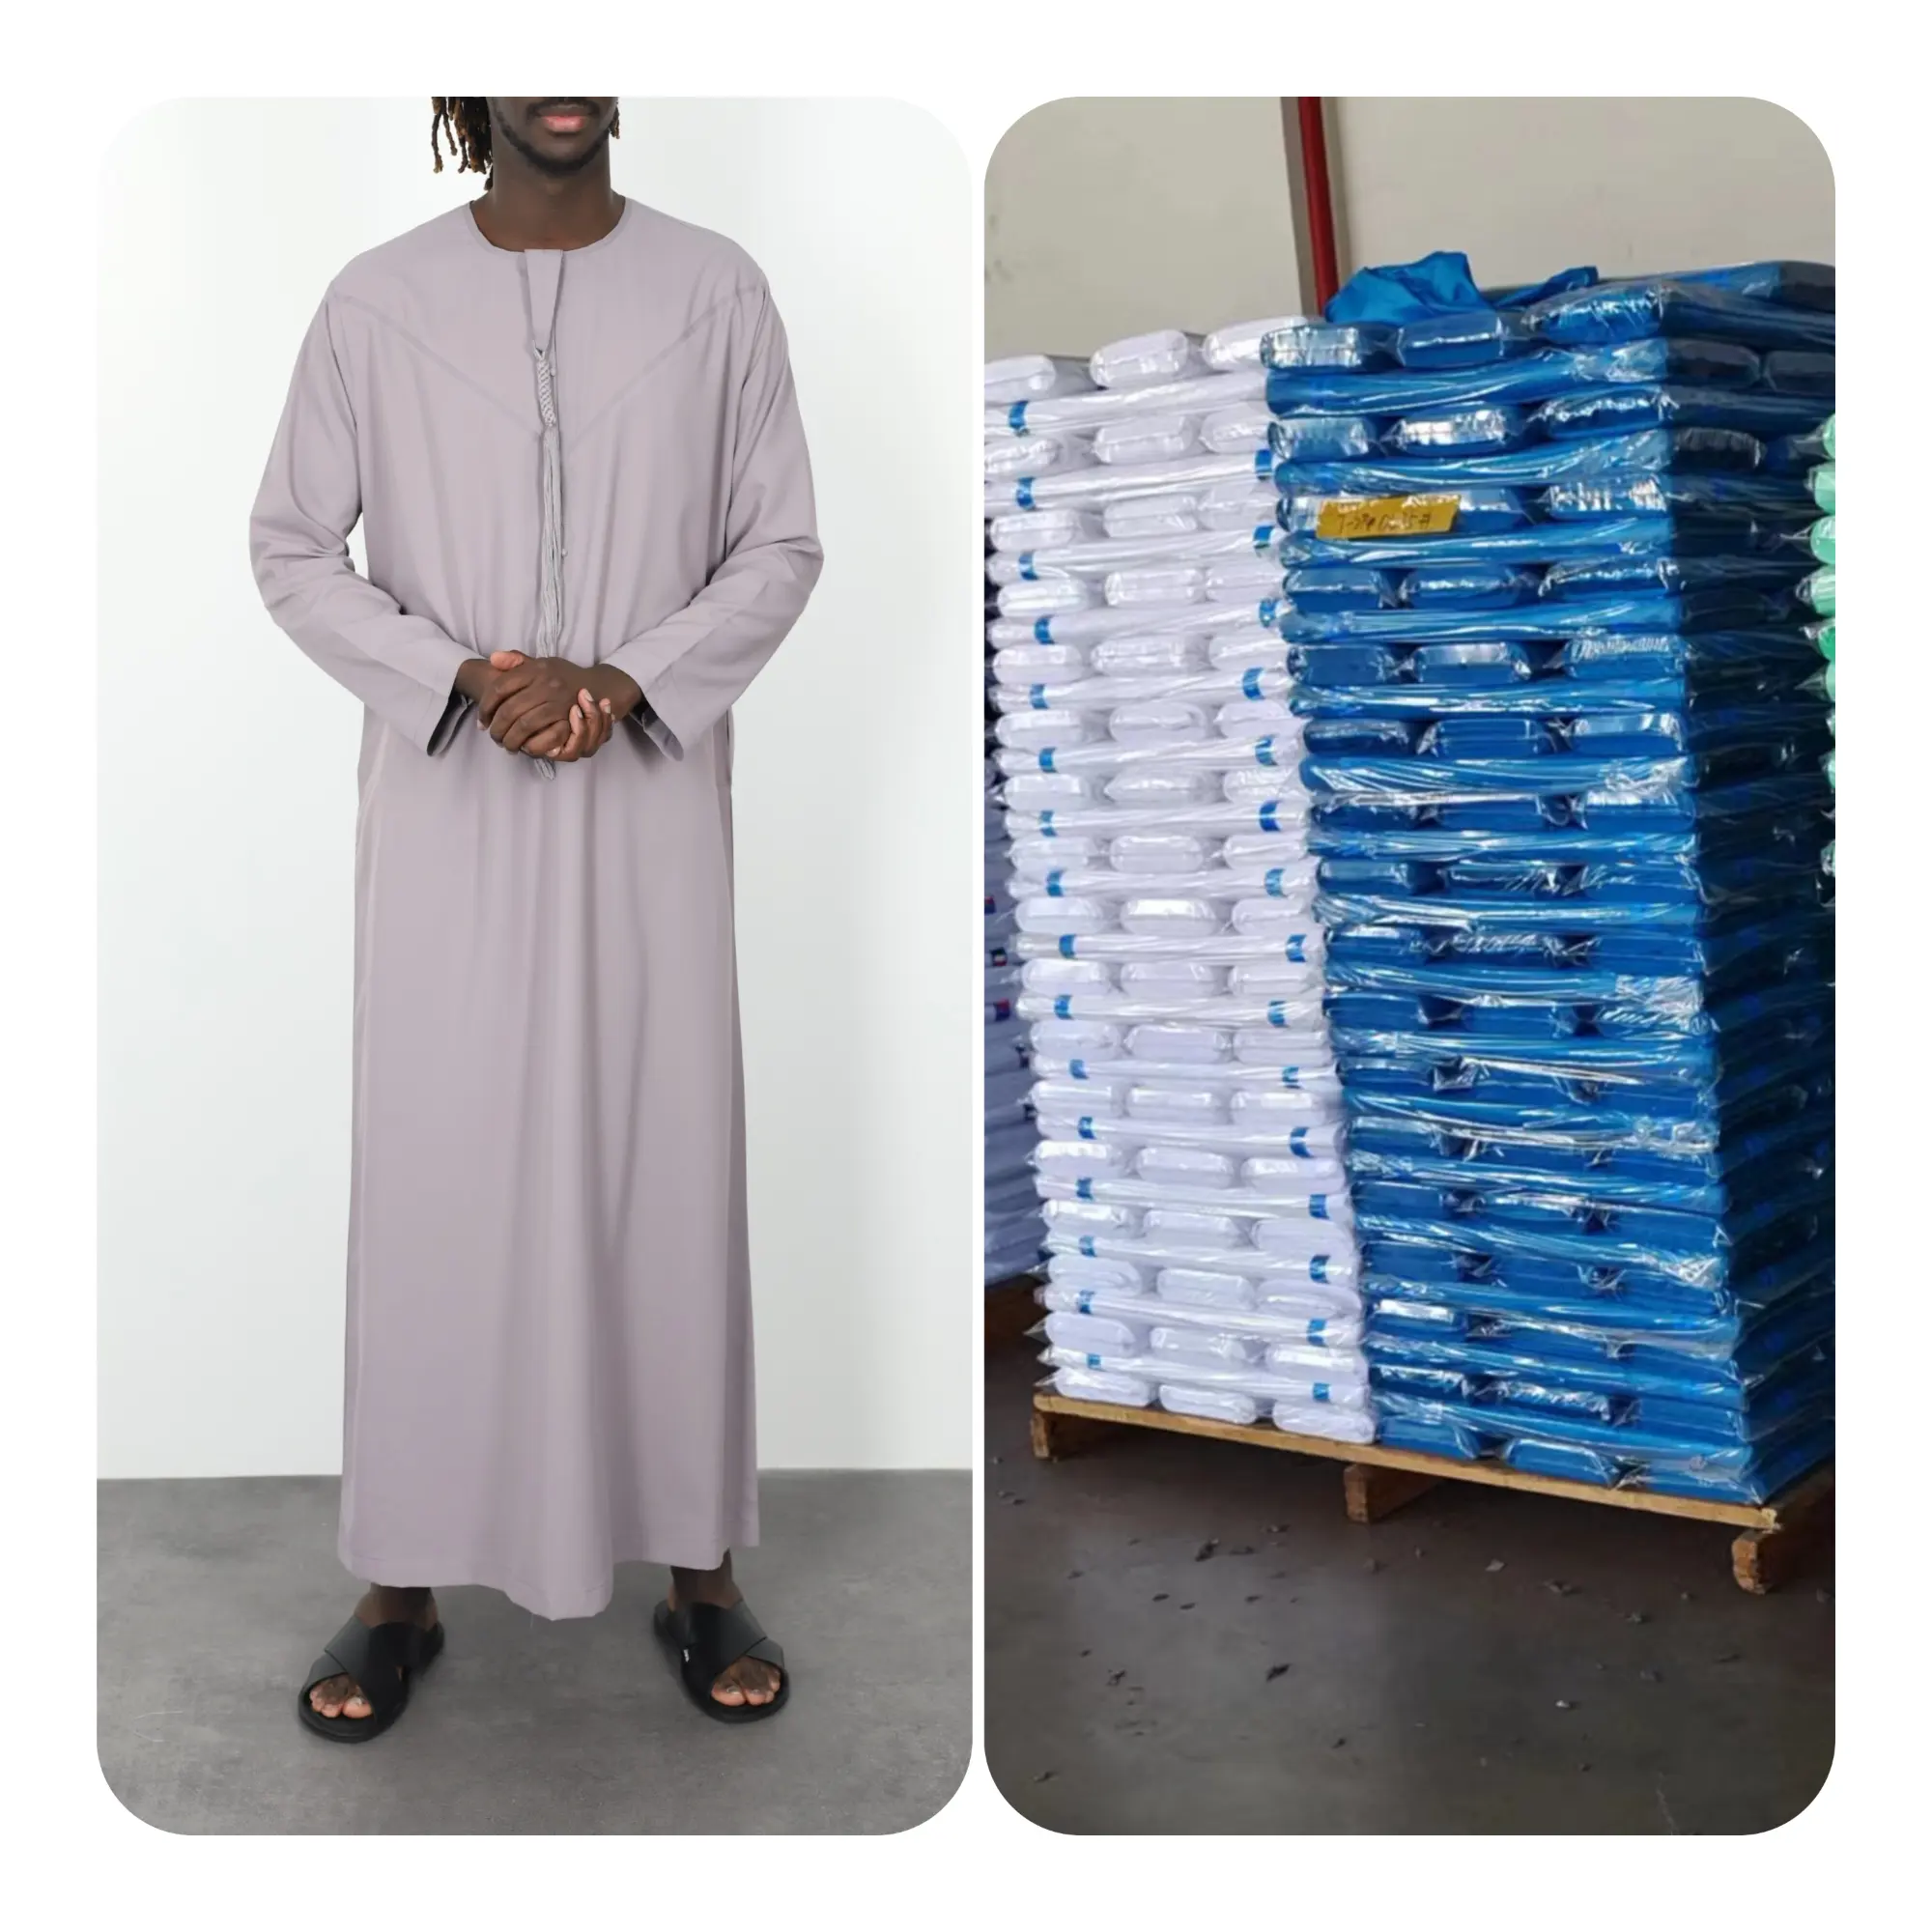 Arabo saudita arabo tessuto in poliestere thobe arabo musulmano Best seller TR 80/20 Toyobo morbido arabo tessuto per gli uomini